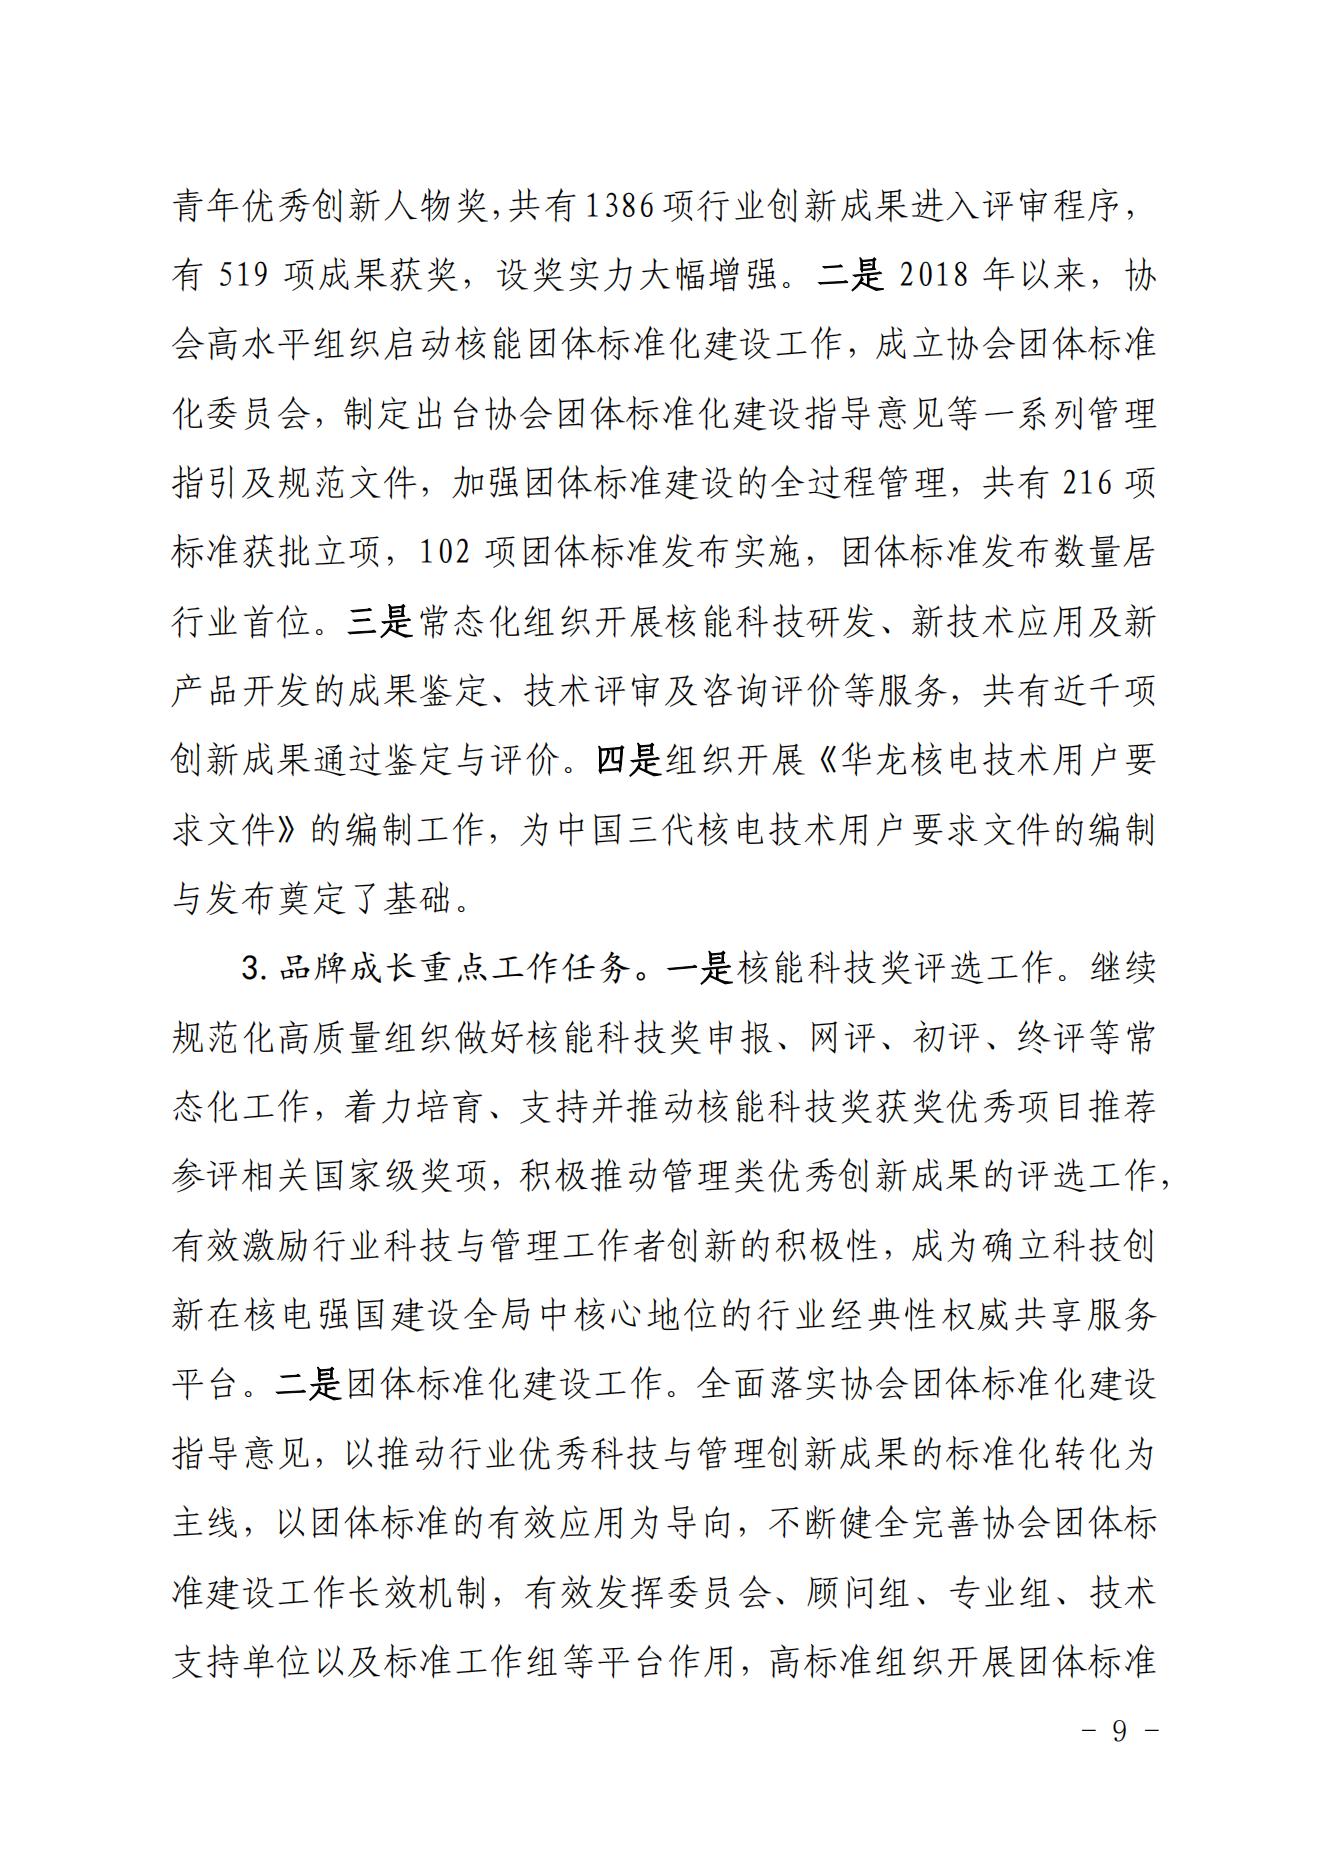 关于印发《中国核能行业协会“品牌协会成长计划”实施方案》的通知_08.jpg